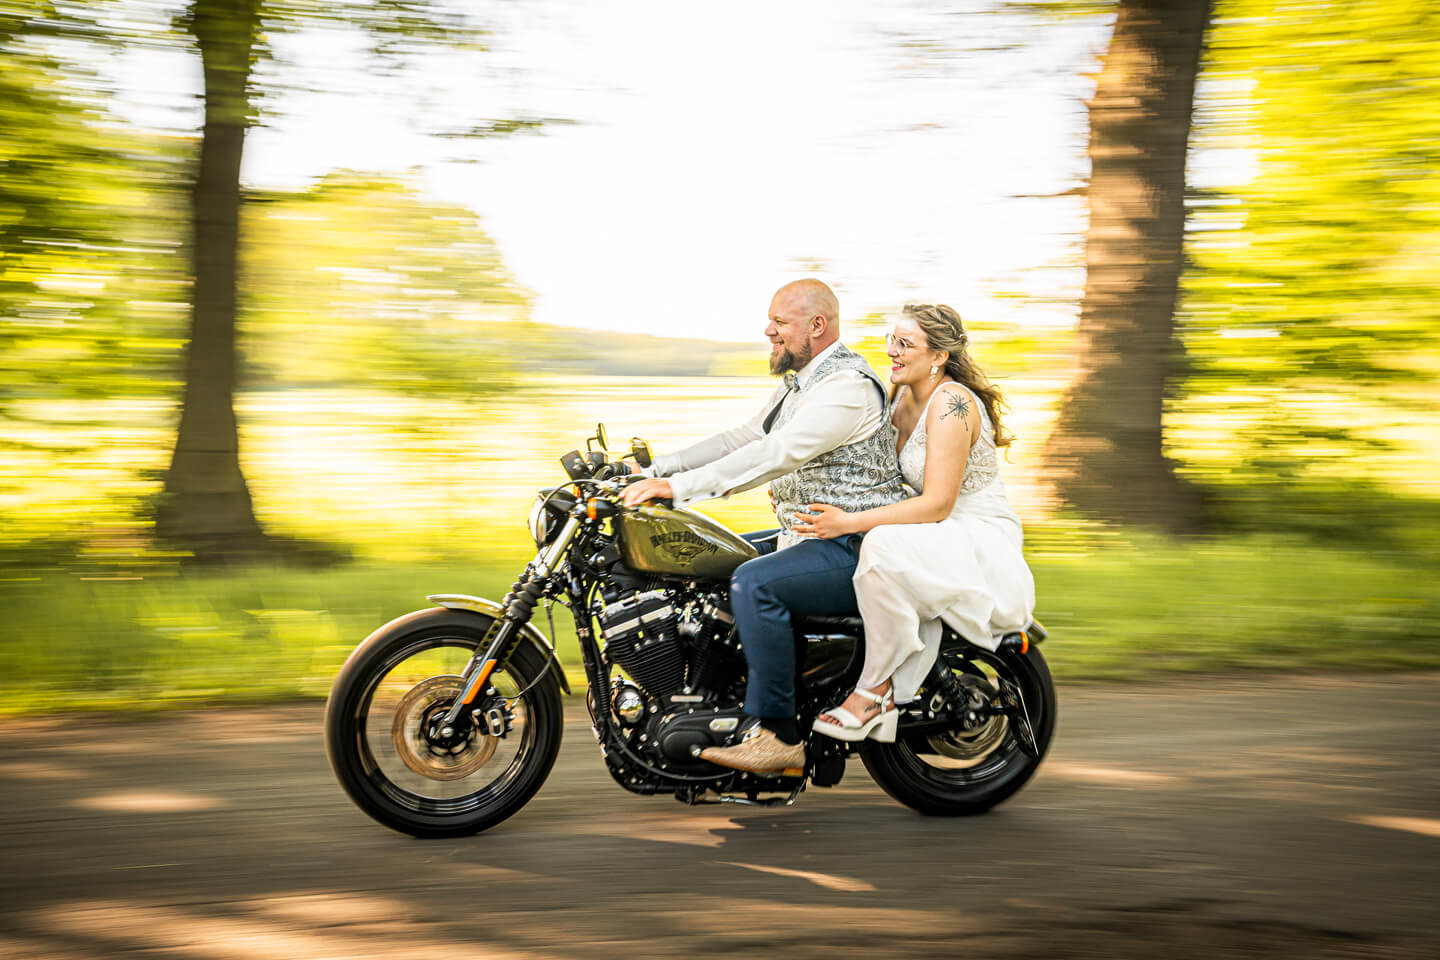 Hochzeitsfotograf Florian Läufer aus Hamburg fotografierte dieses Hochzeitspaar auf einer Harley Davidson.